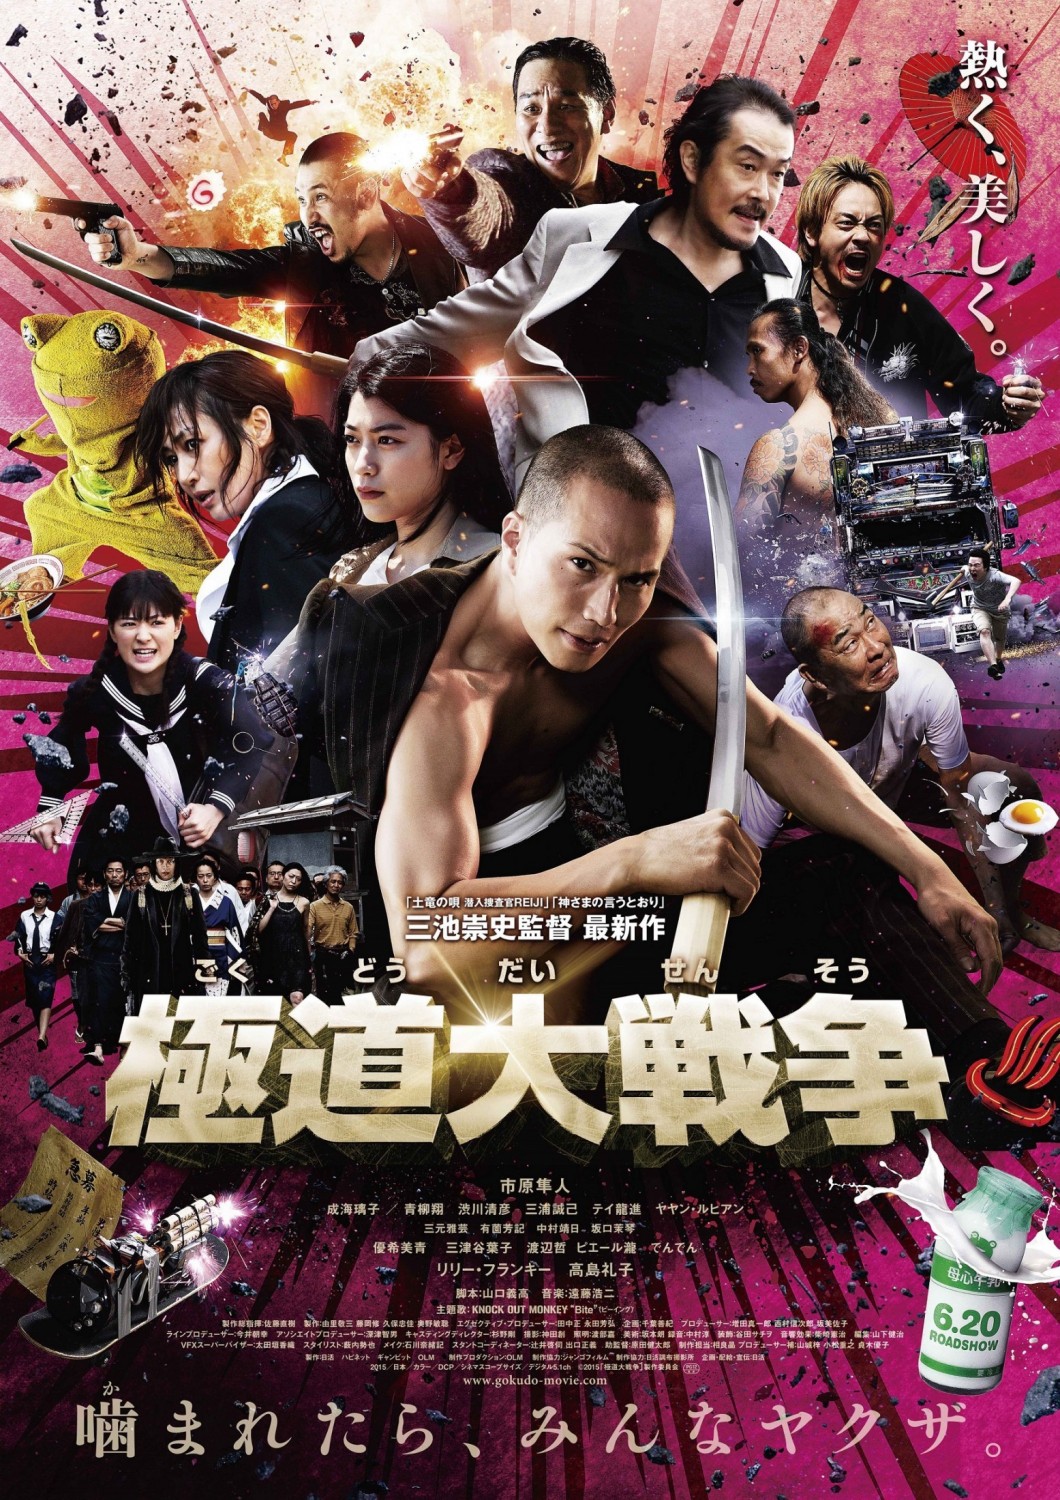 Extra Large Movie Poster Image for Gokudou daisensou (#1 of 3)